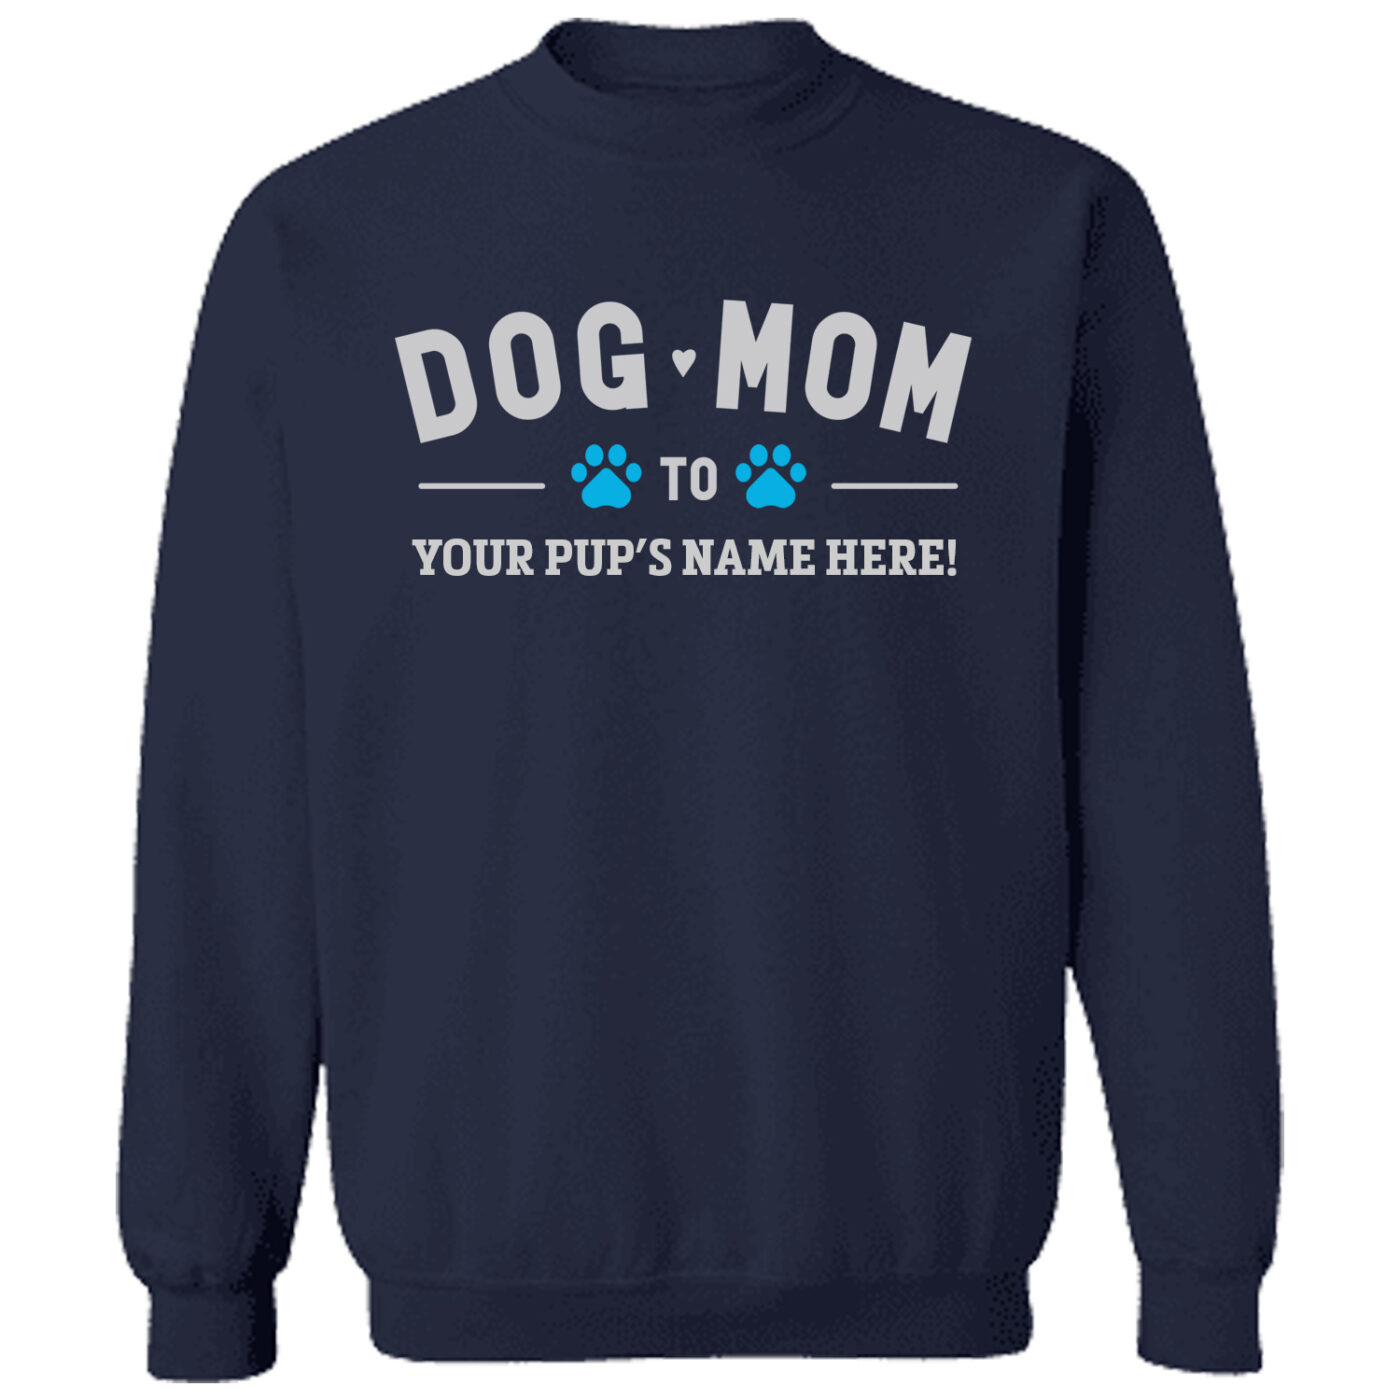 Dog Lover Sweatshirts For Humans: Dog Moms & Dads